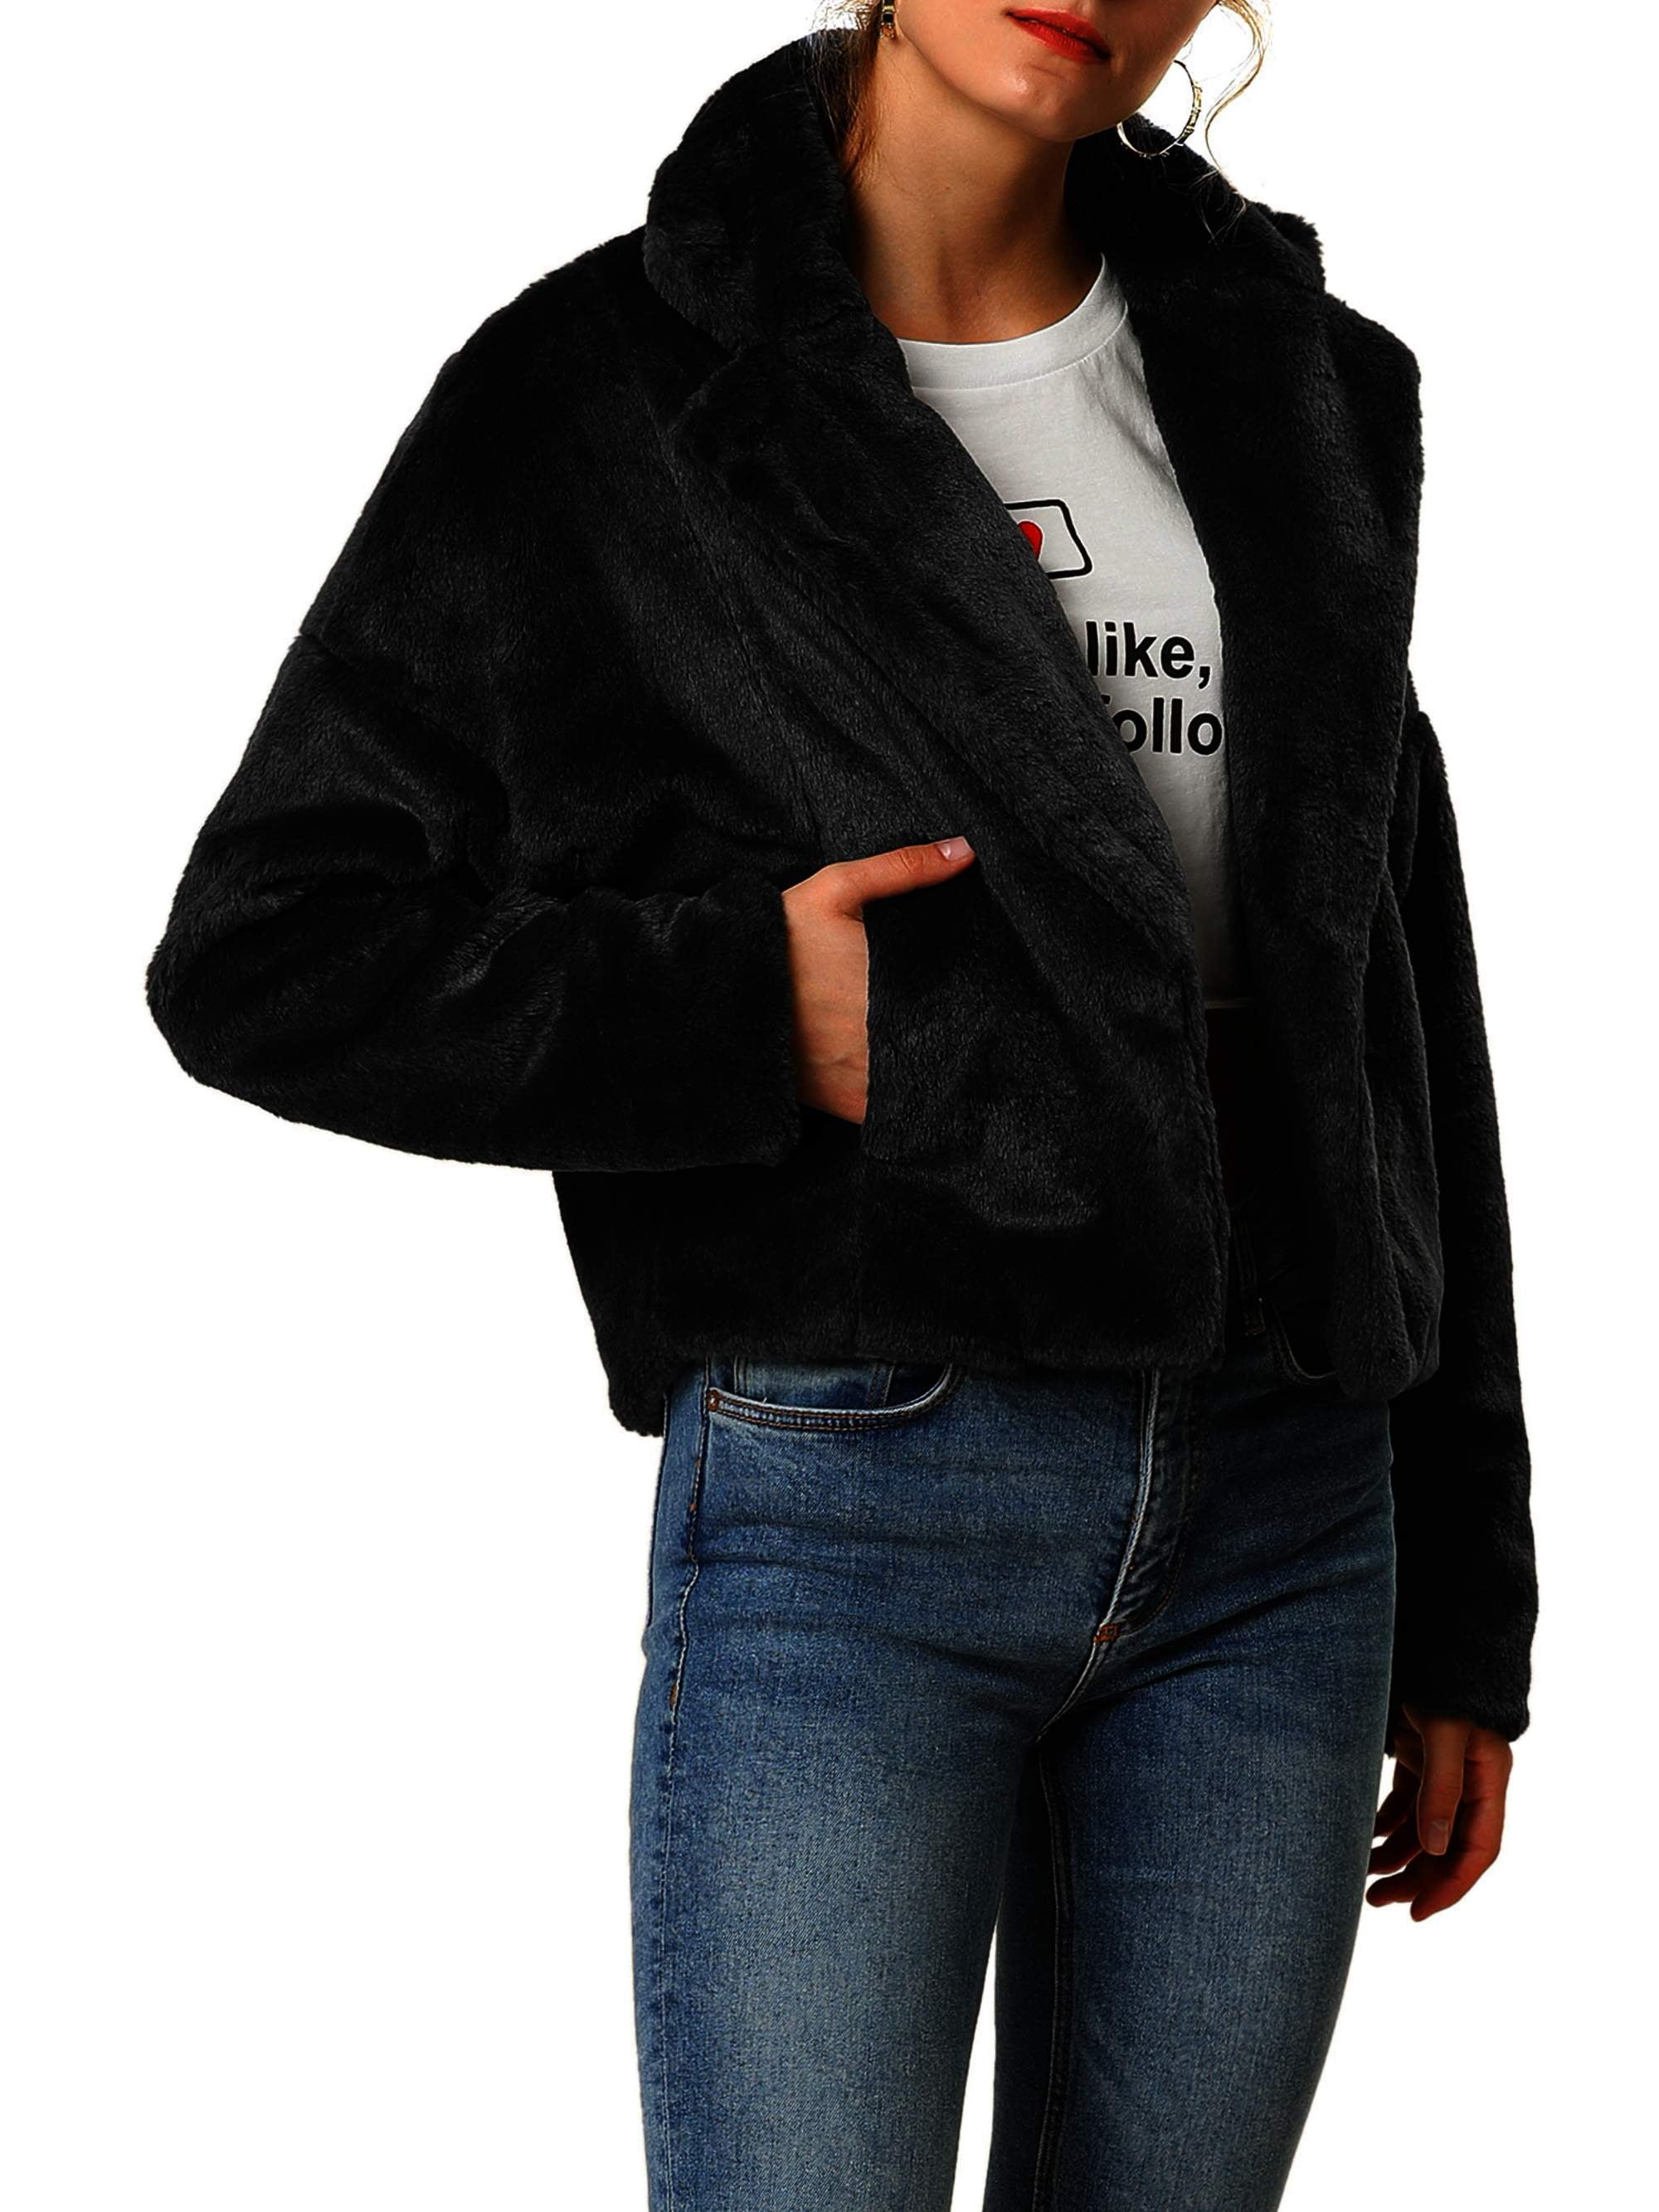 Unique Bargains Women's Cropped Jacket Notch Lapel Faux Fur Fluffy Coat ...